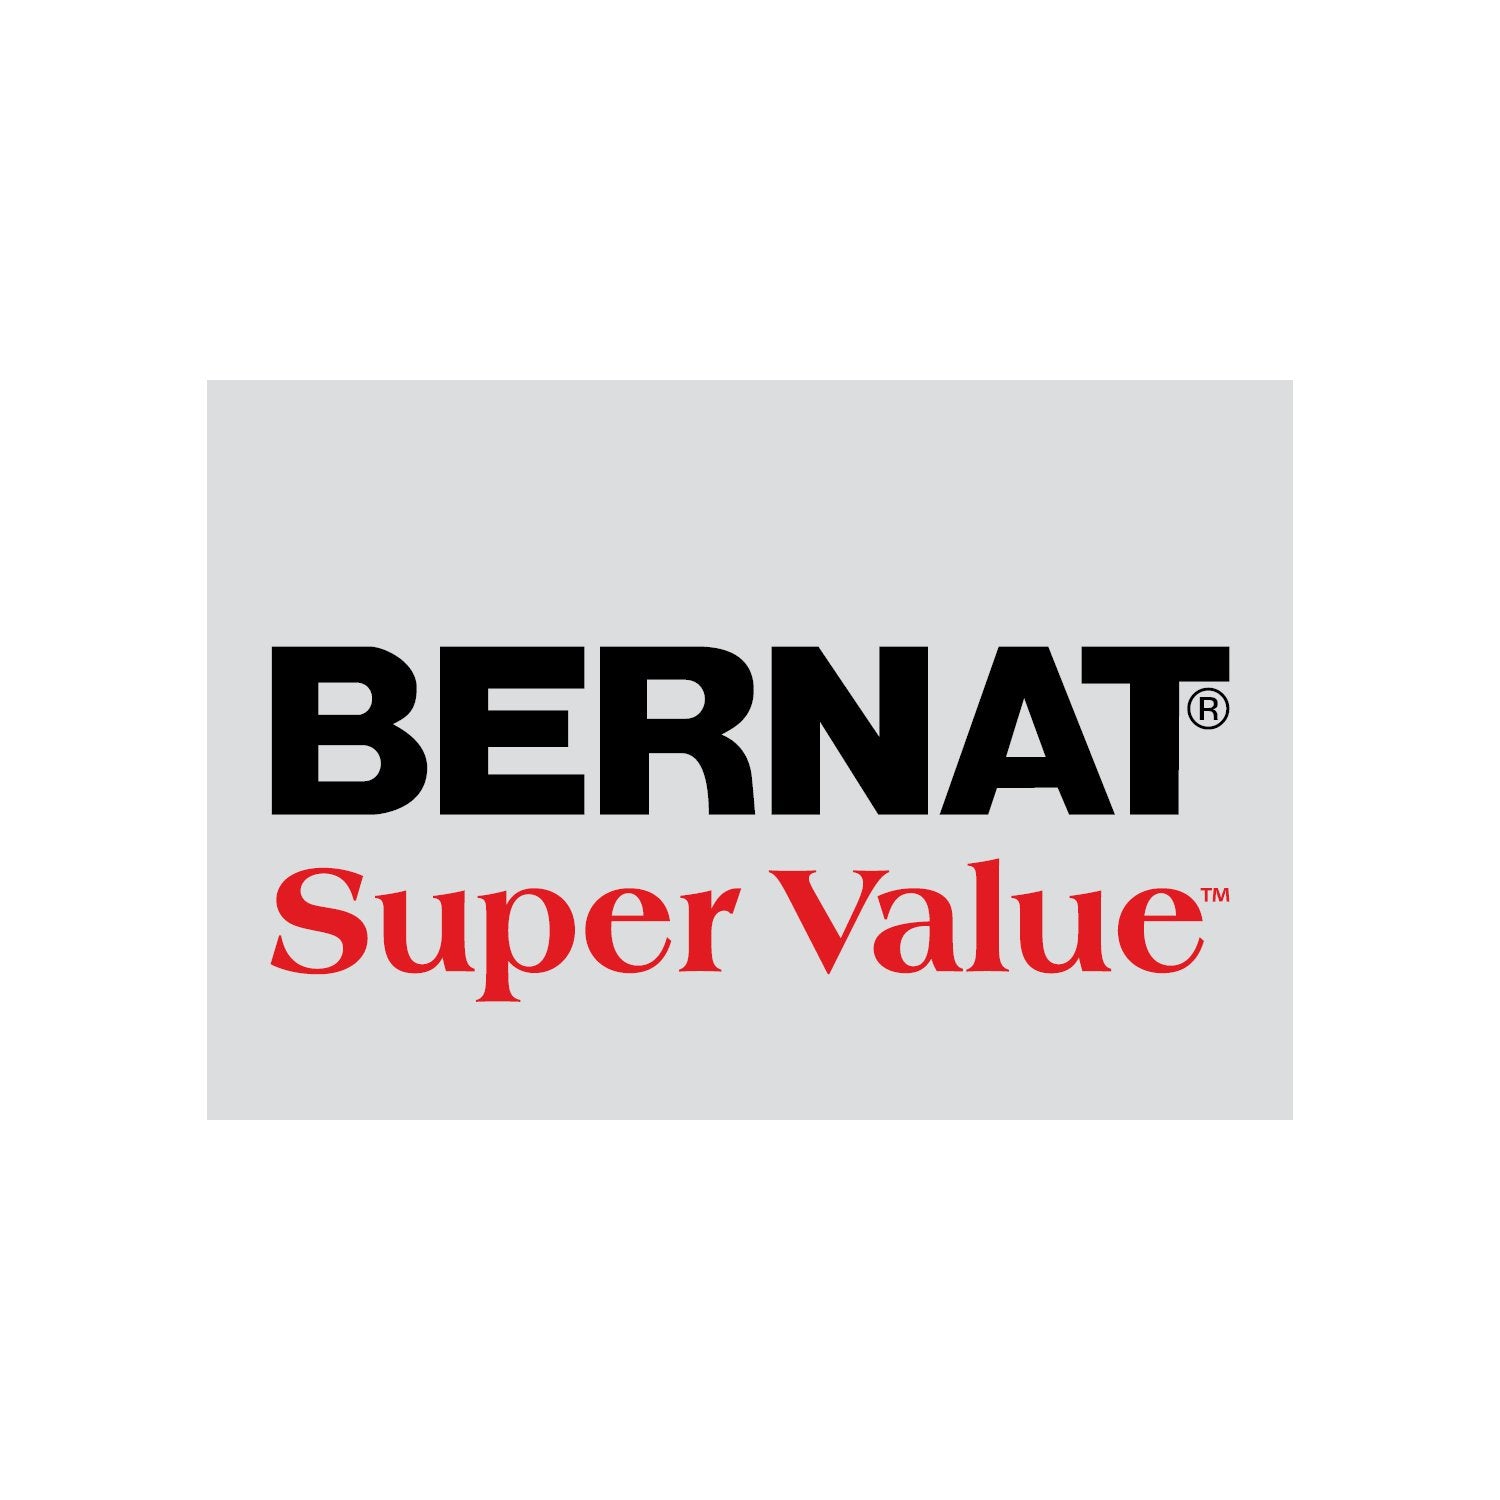 Bernat Super Value Yarn - Walnut